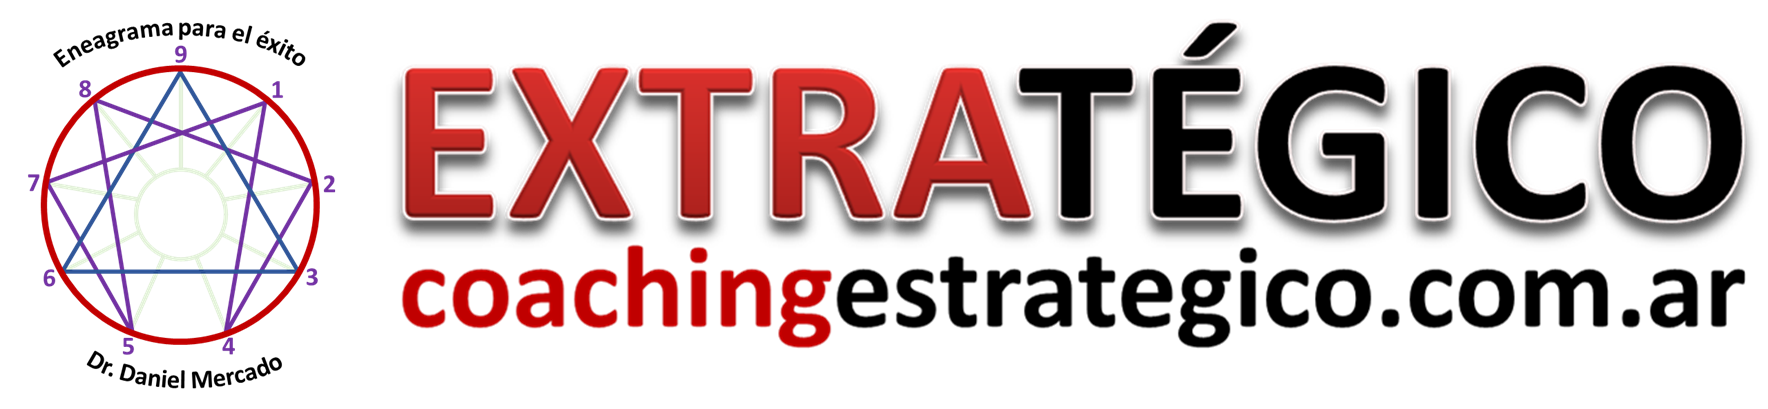 Coaching Estrategico -EXTRATEGICO